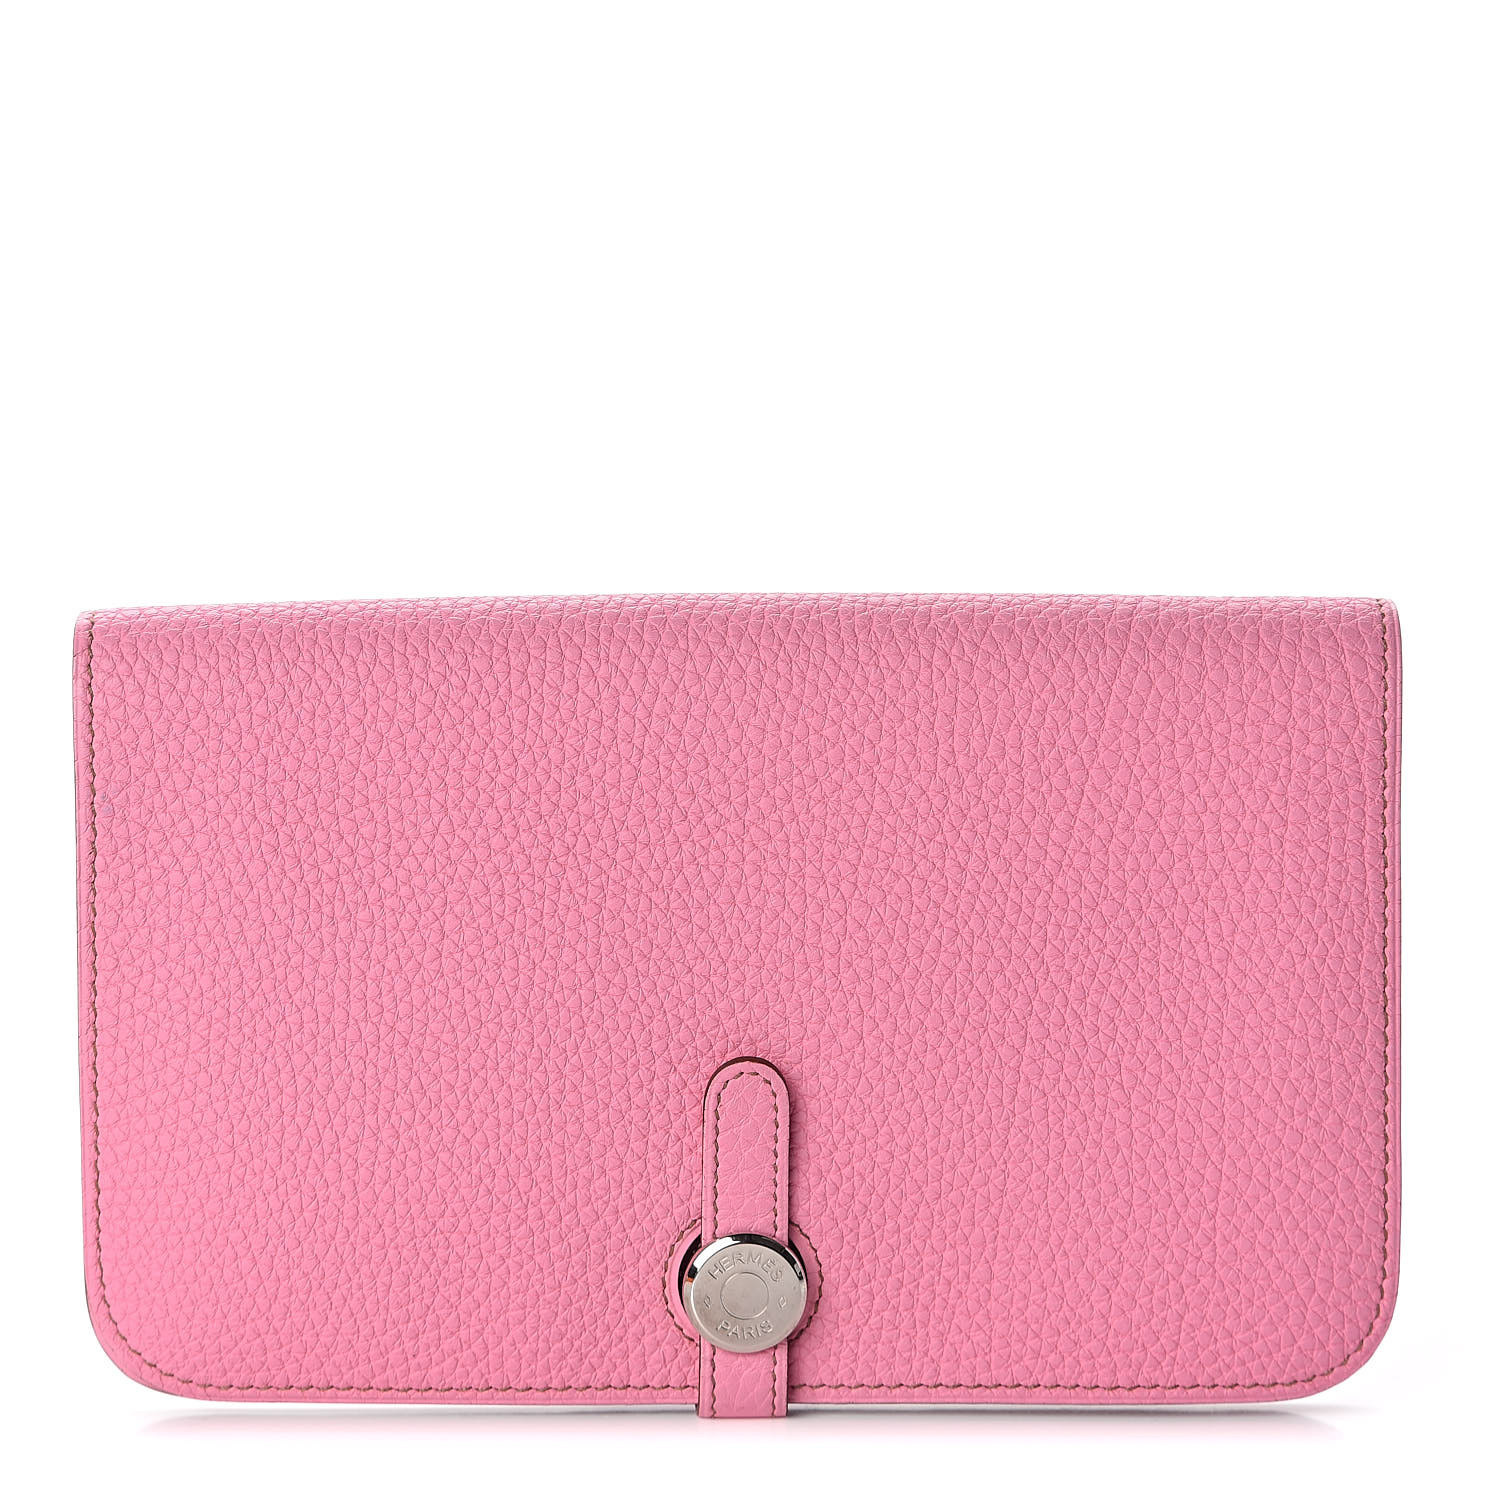 hermes wallet pink